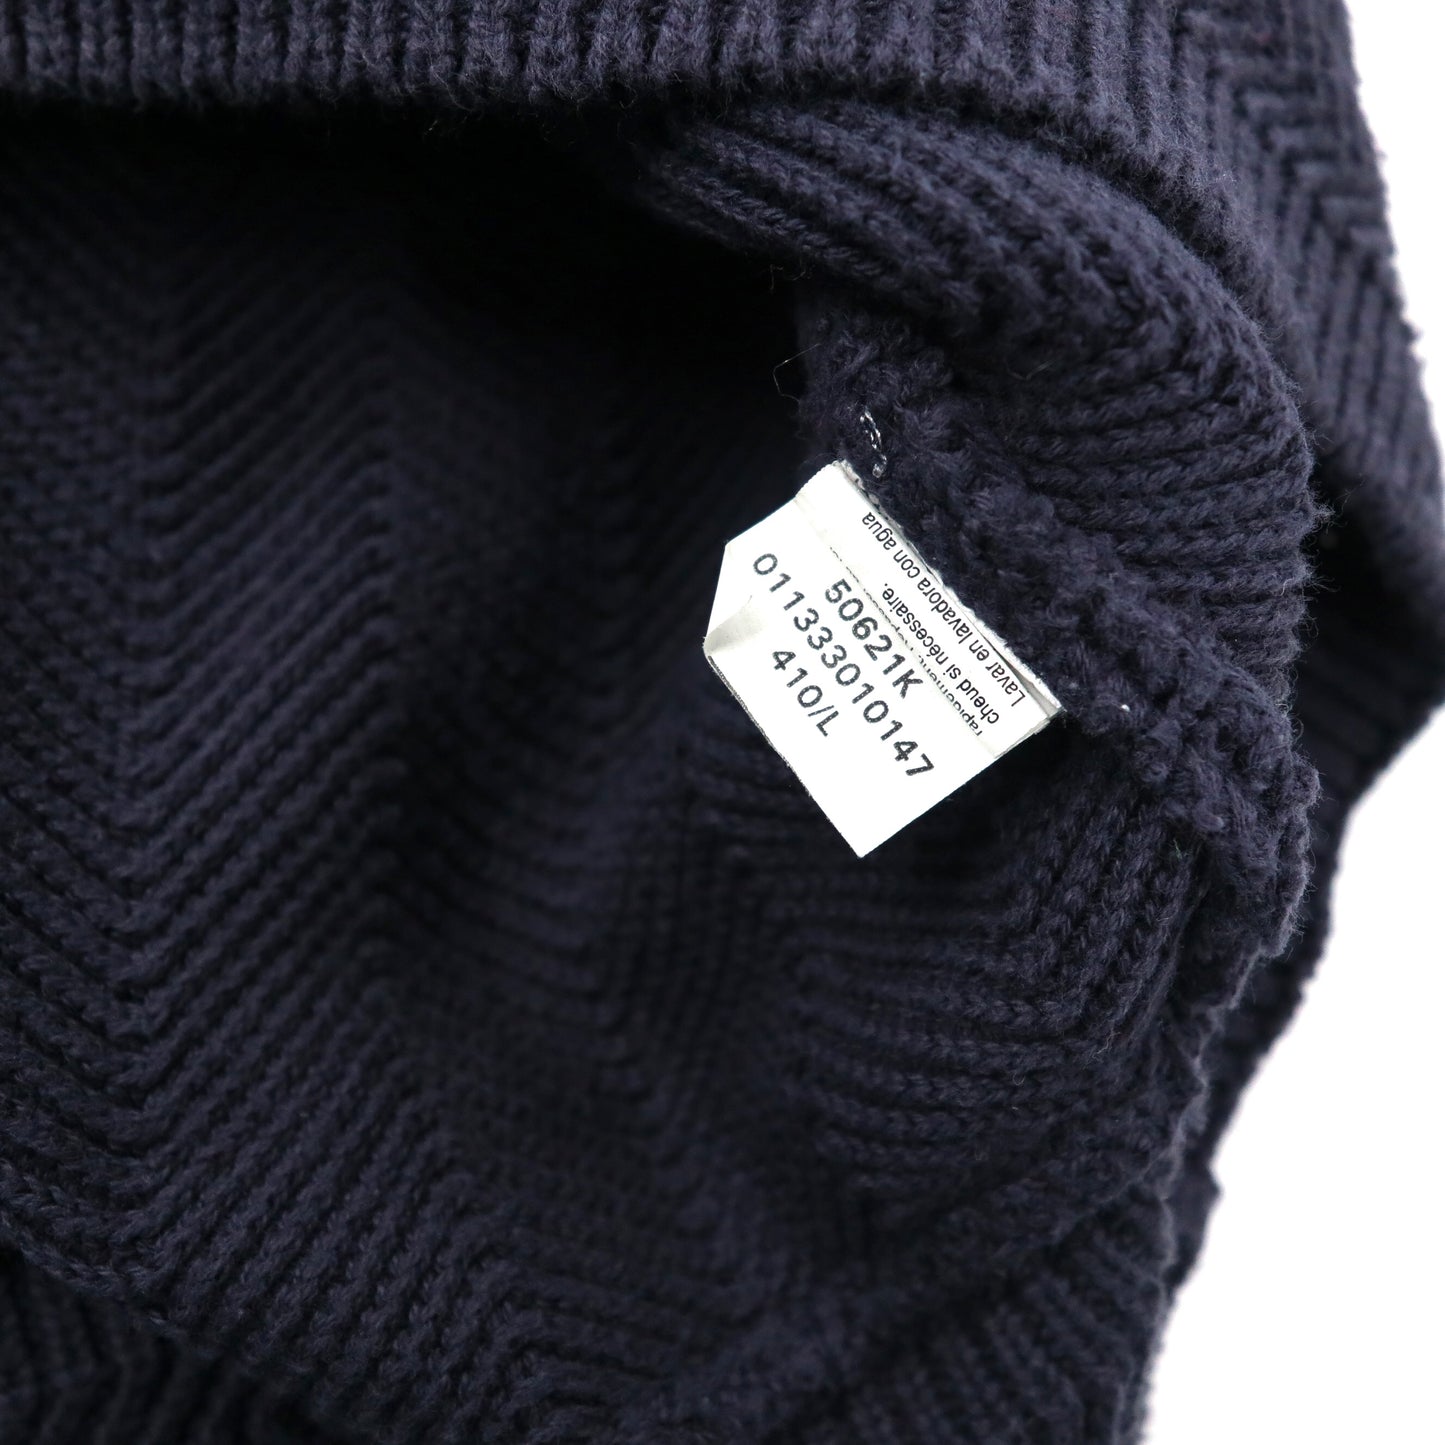 CHAPS ビッグサイズ ヘリンボーンニット セーター L ネイビー コットン ワンポイントロゴ刺繍 90年代